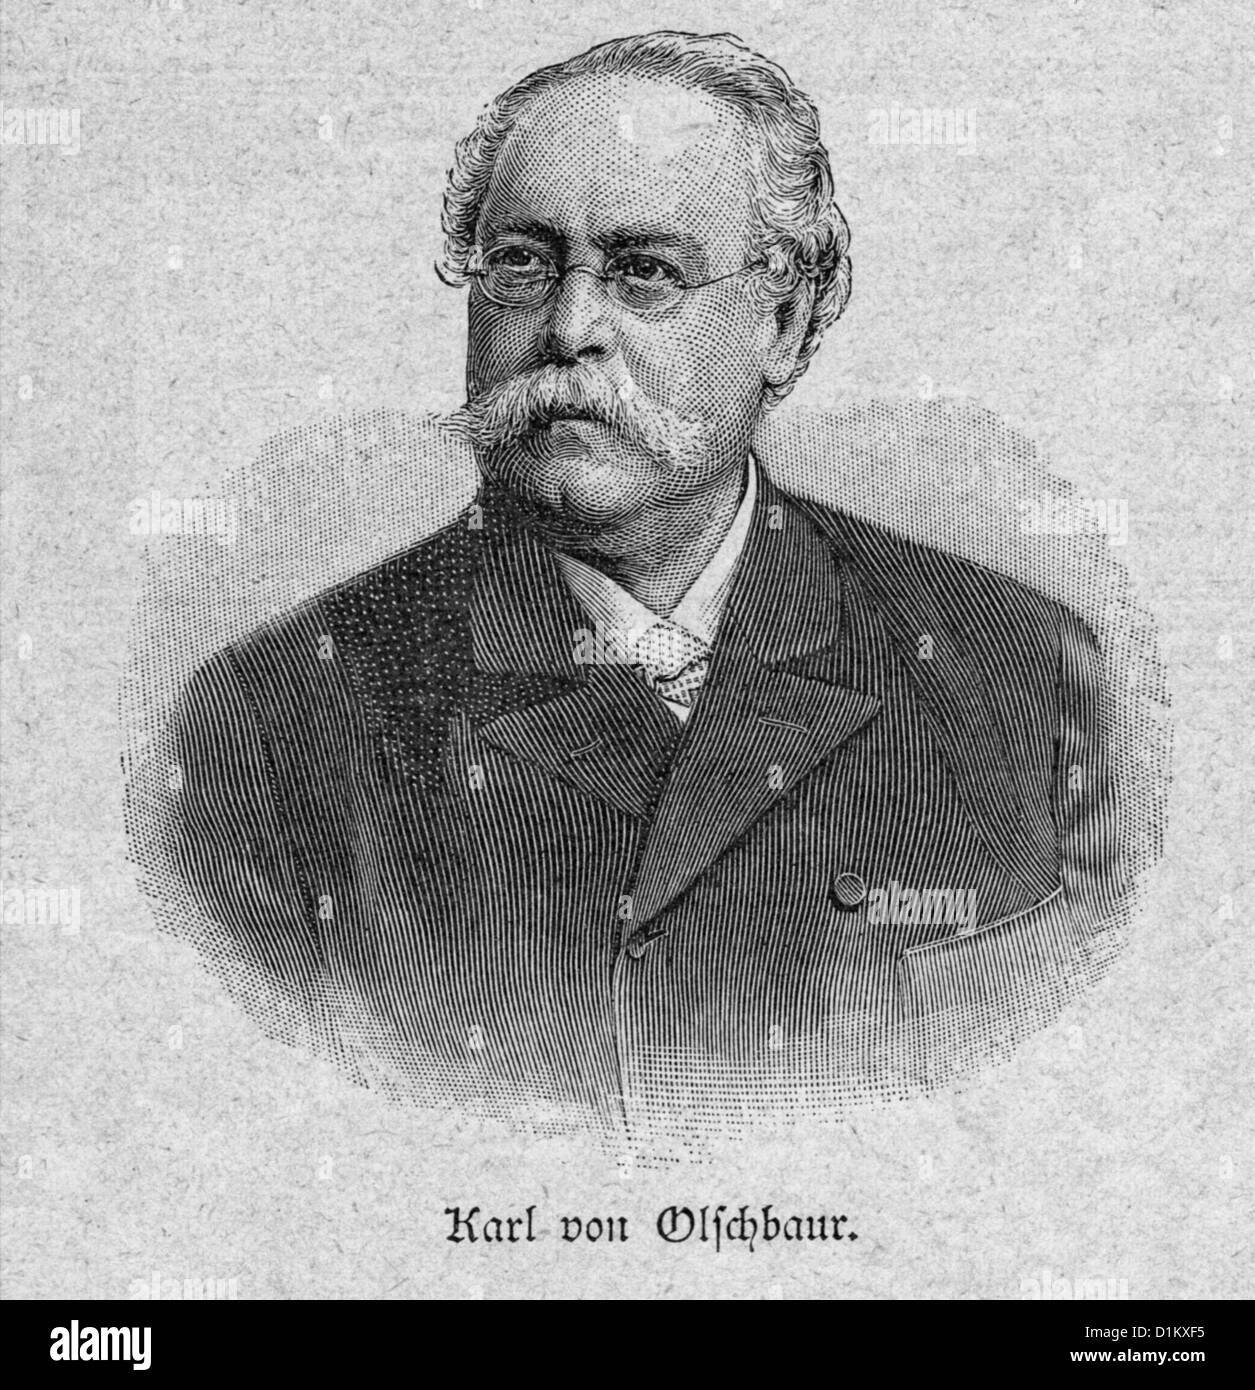 Karl Ritter von Olschbaur, tenor alemán, circa 1895 Foto de stock